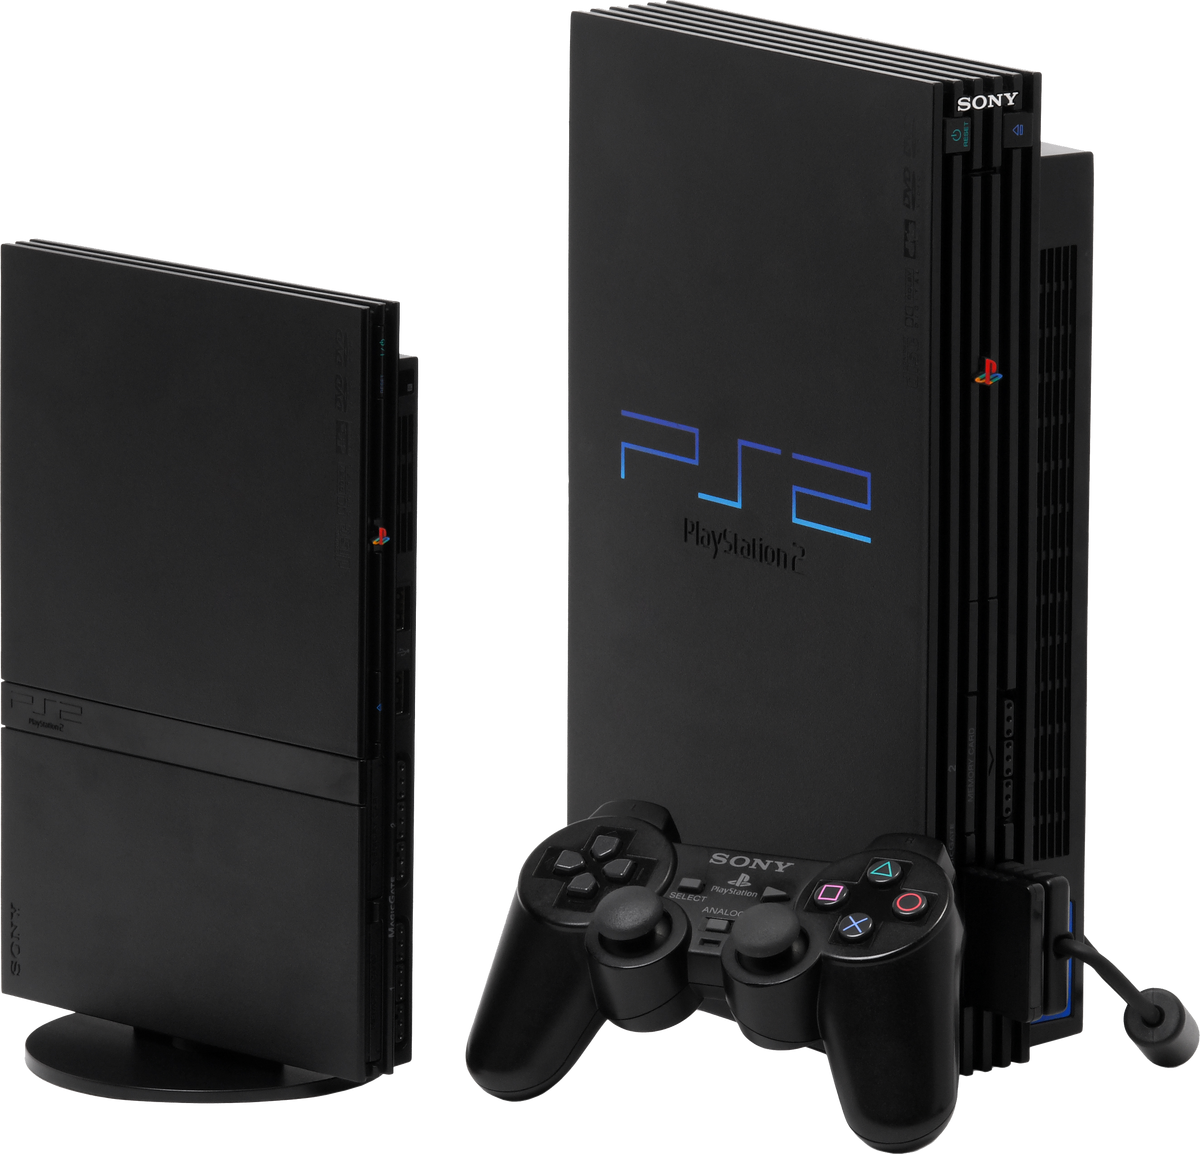 PlayStation 2 | PlayStation Wiki | Fandom